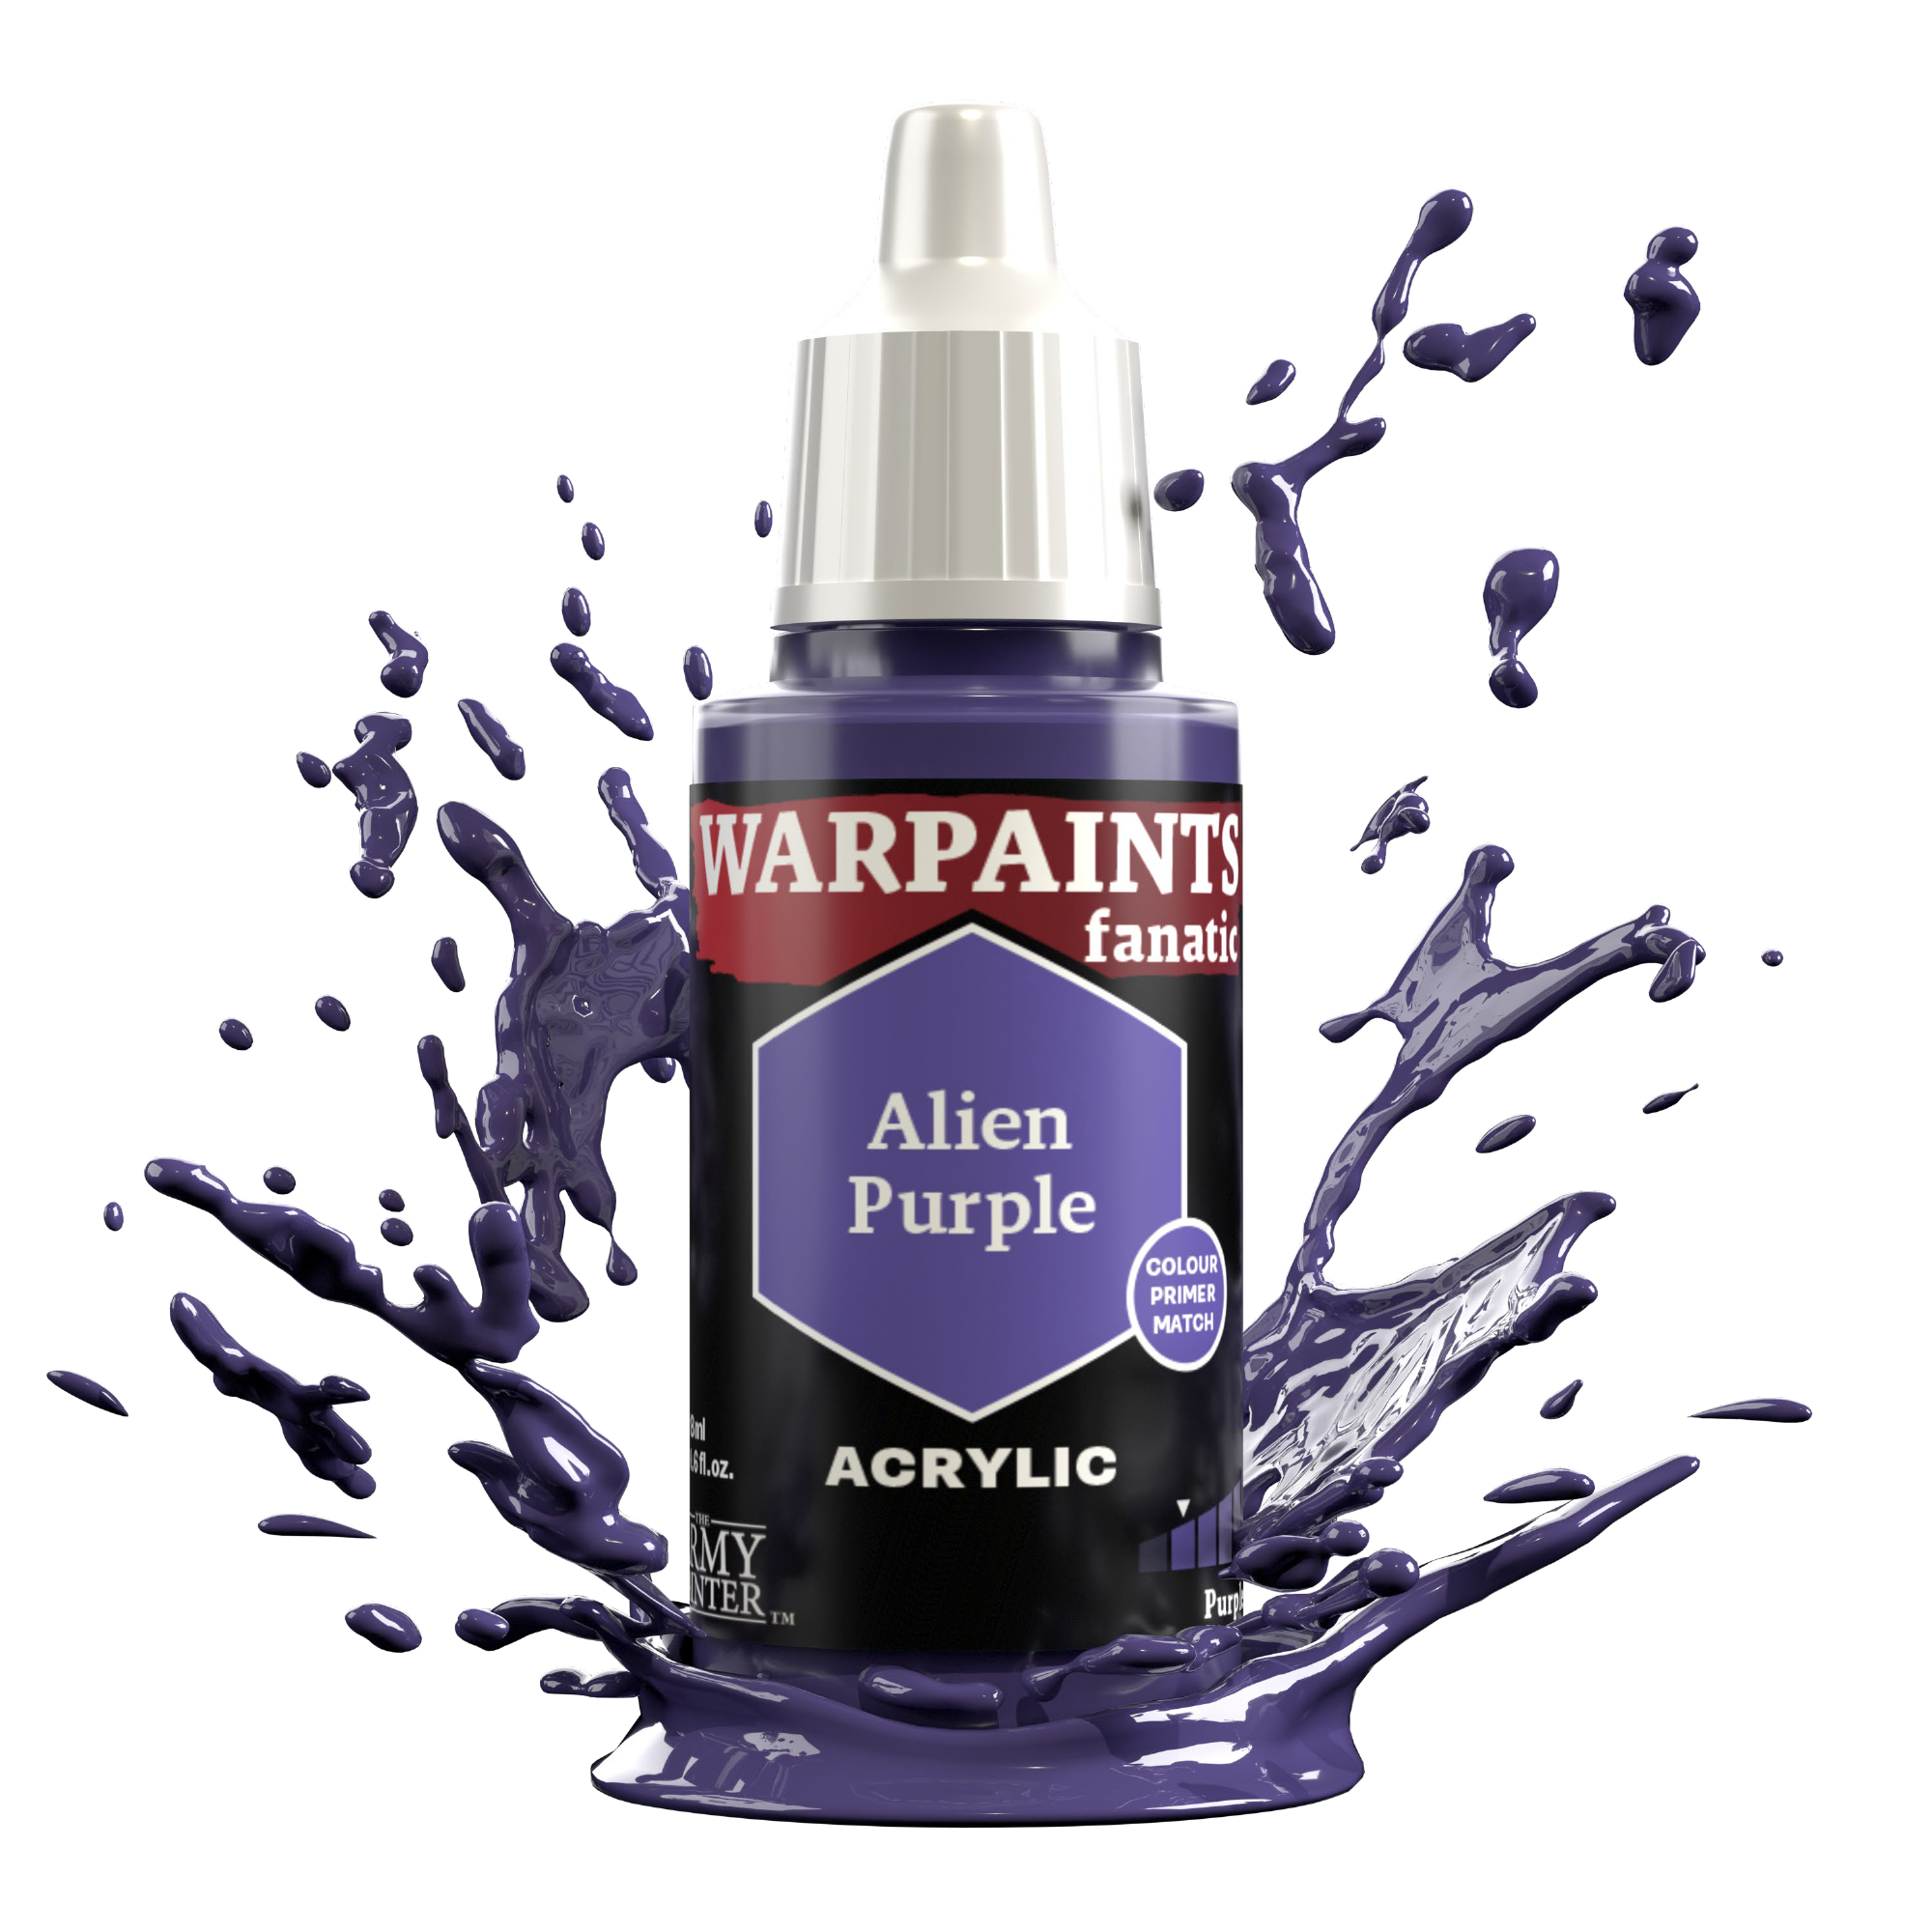 Alien Purple Fanatic